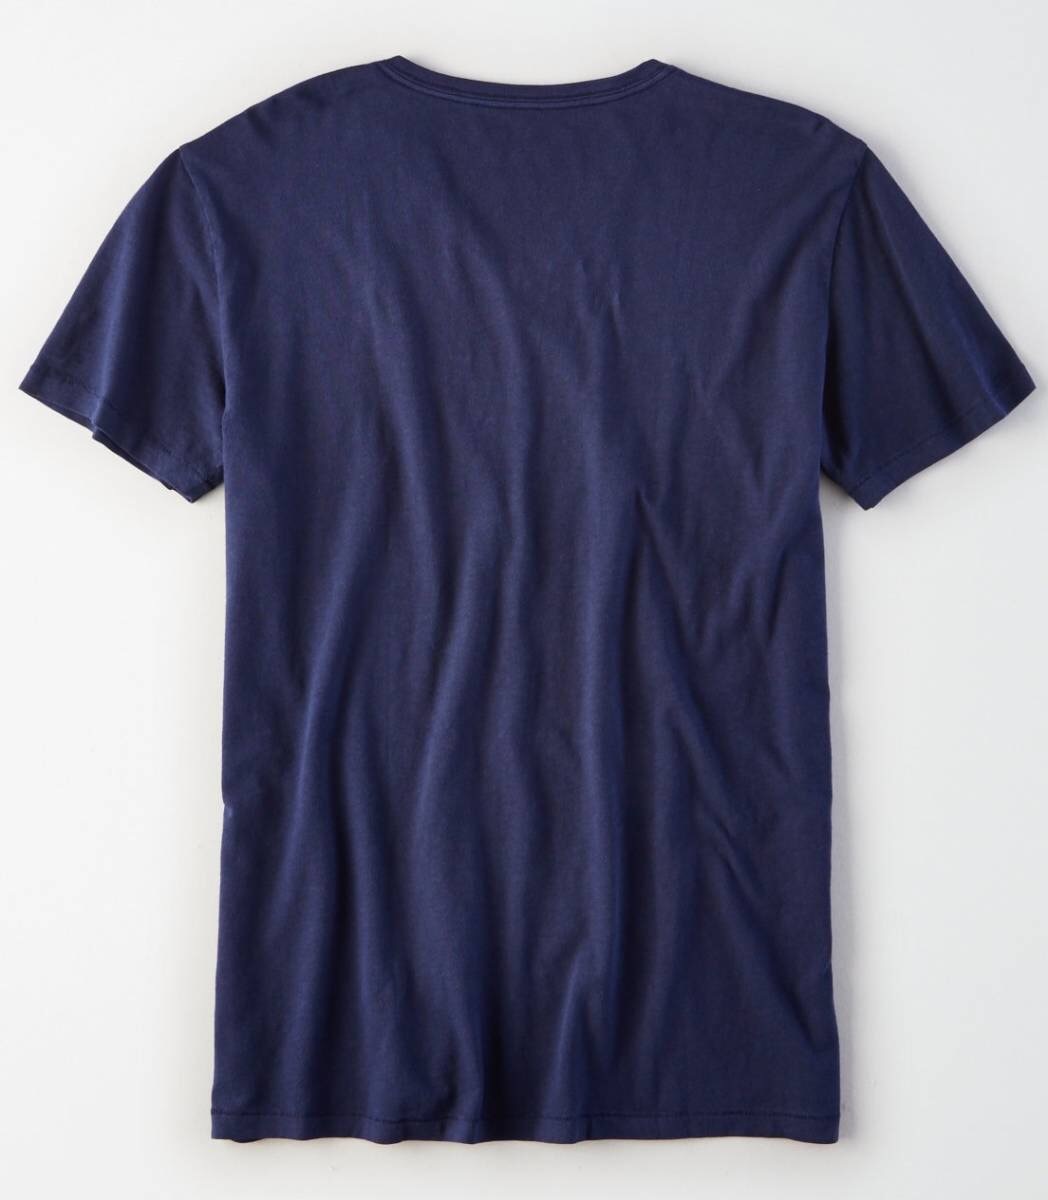 セール! 正規品 本物 新品 アメリカンイーグル Vネック Tシャツ AMERICAN EAGLE 知的で 上品 最強カラー ネイビー 刺繍あり 綿100% S ( M_画像2